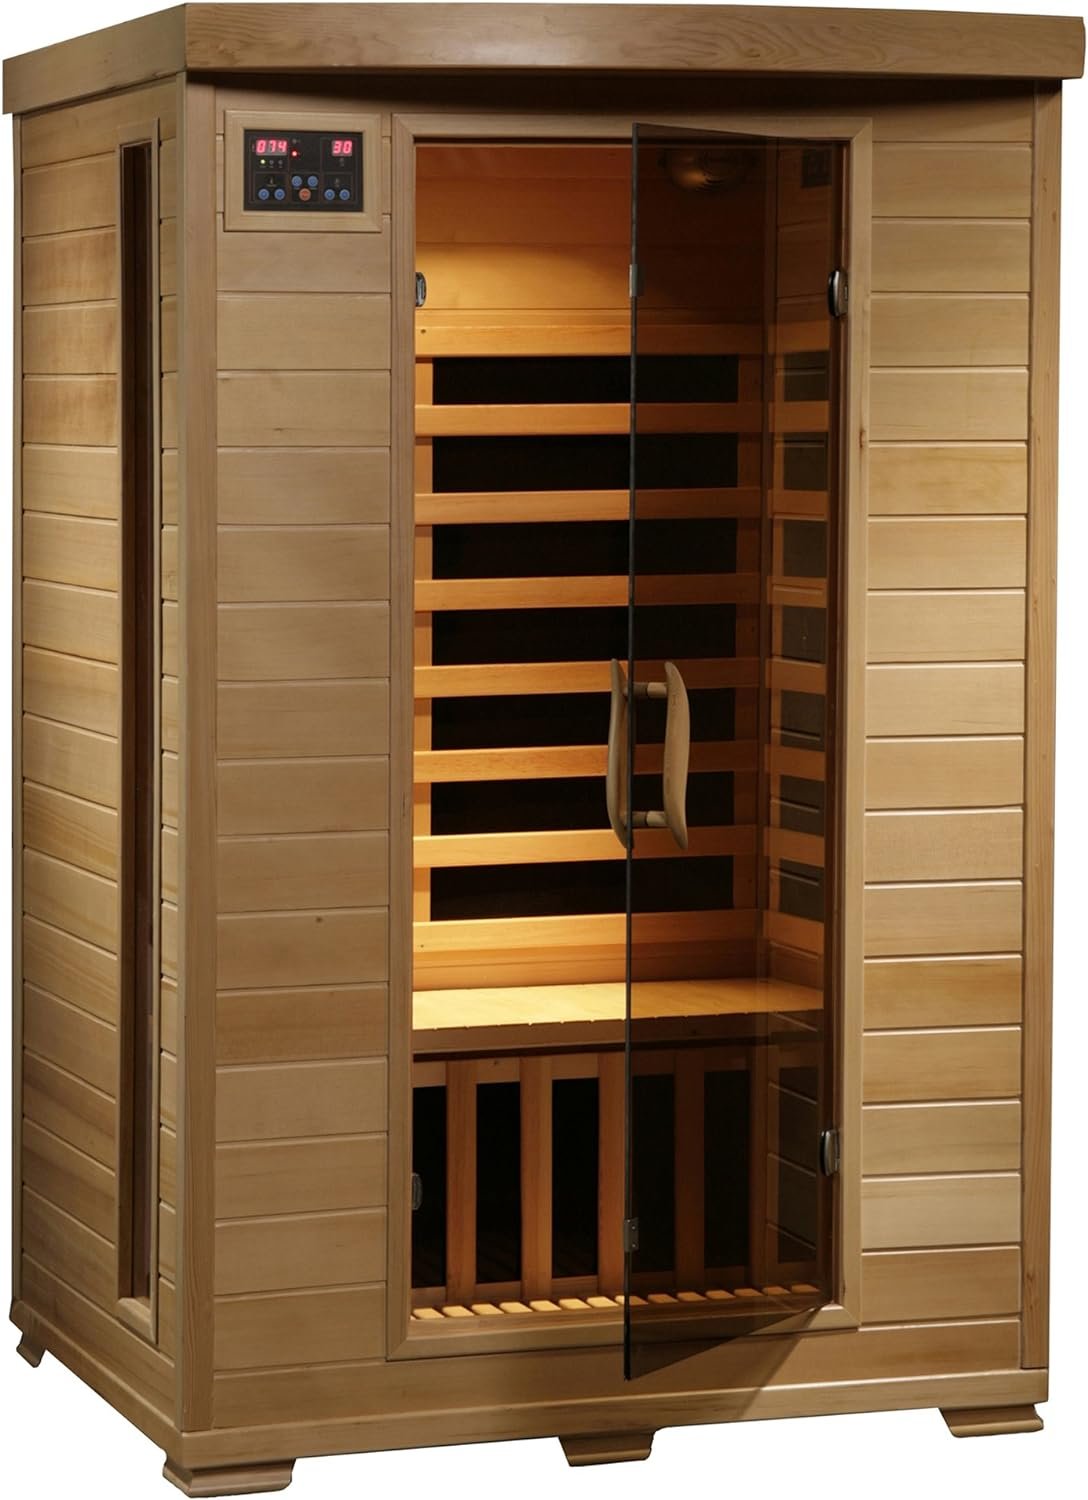 HEATWAVE Radiant Saunas 2-Person Hemlock Infrared Sauna Review